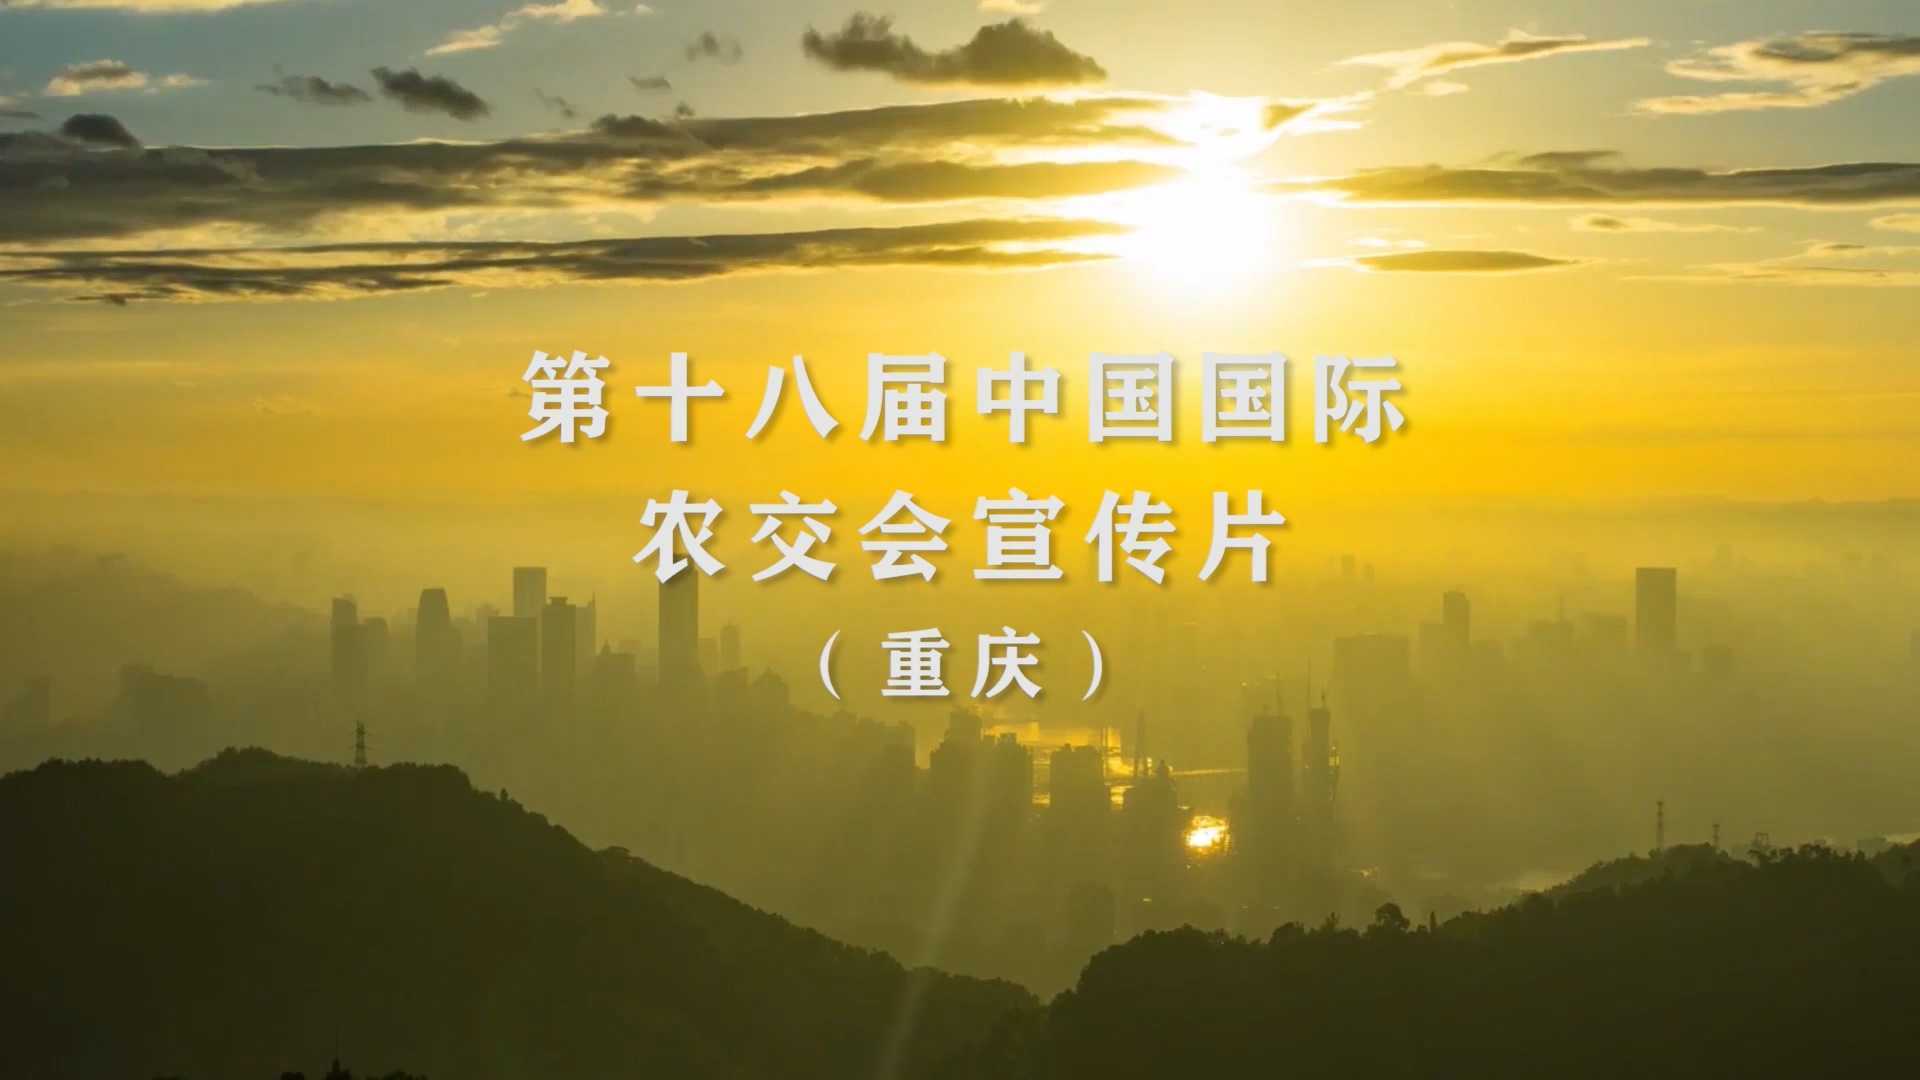 2020年全国农交会重庆农委宣传片